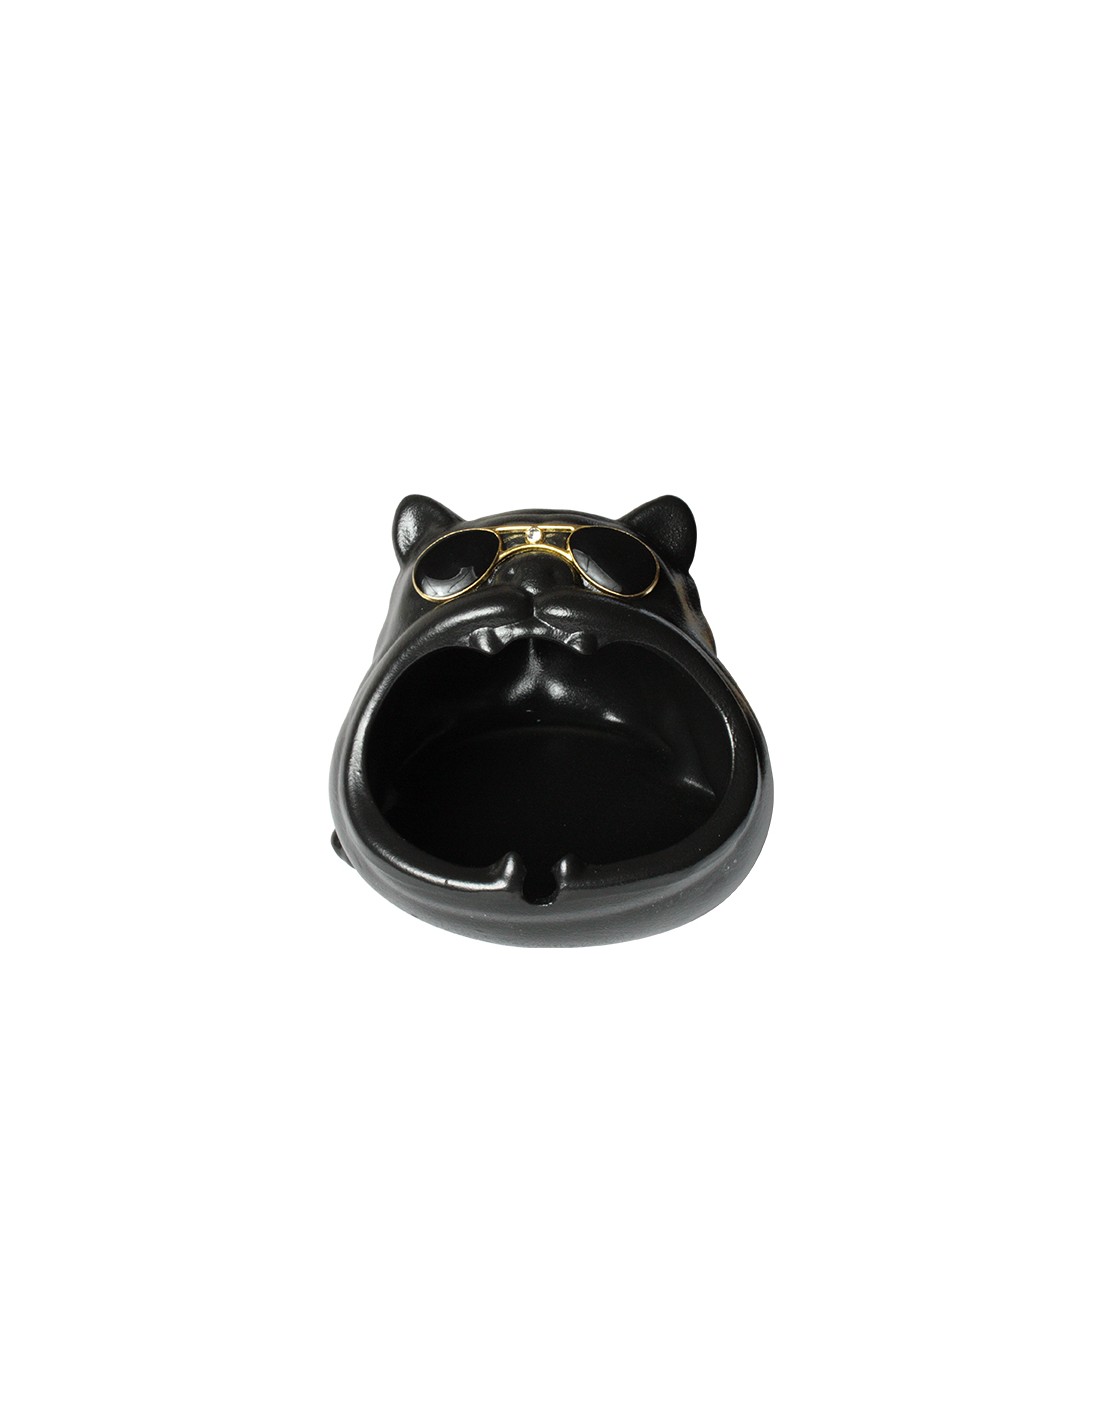 black-dog-ashtray (1)